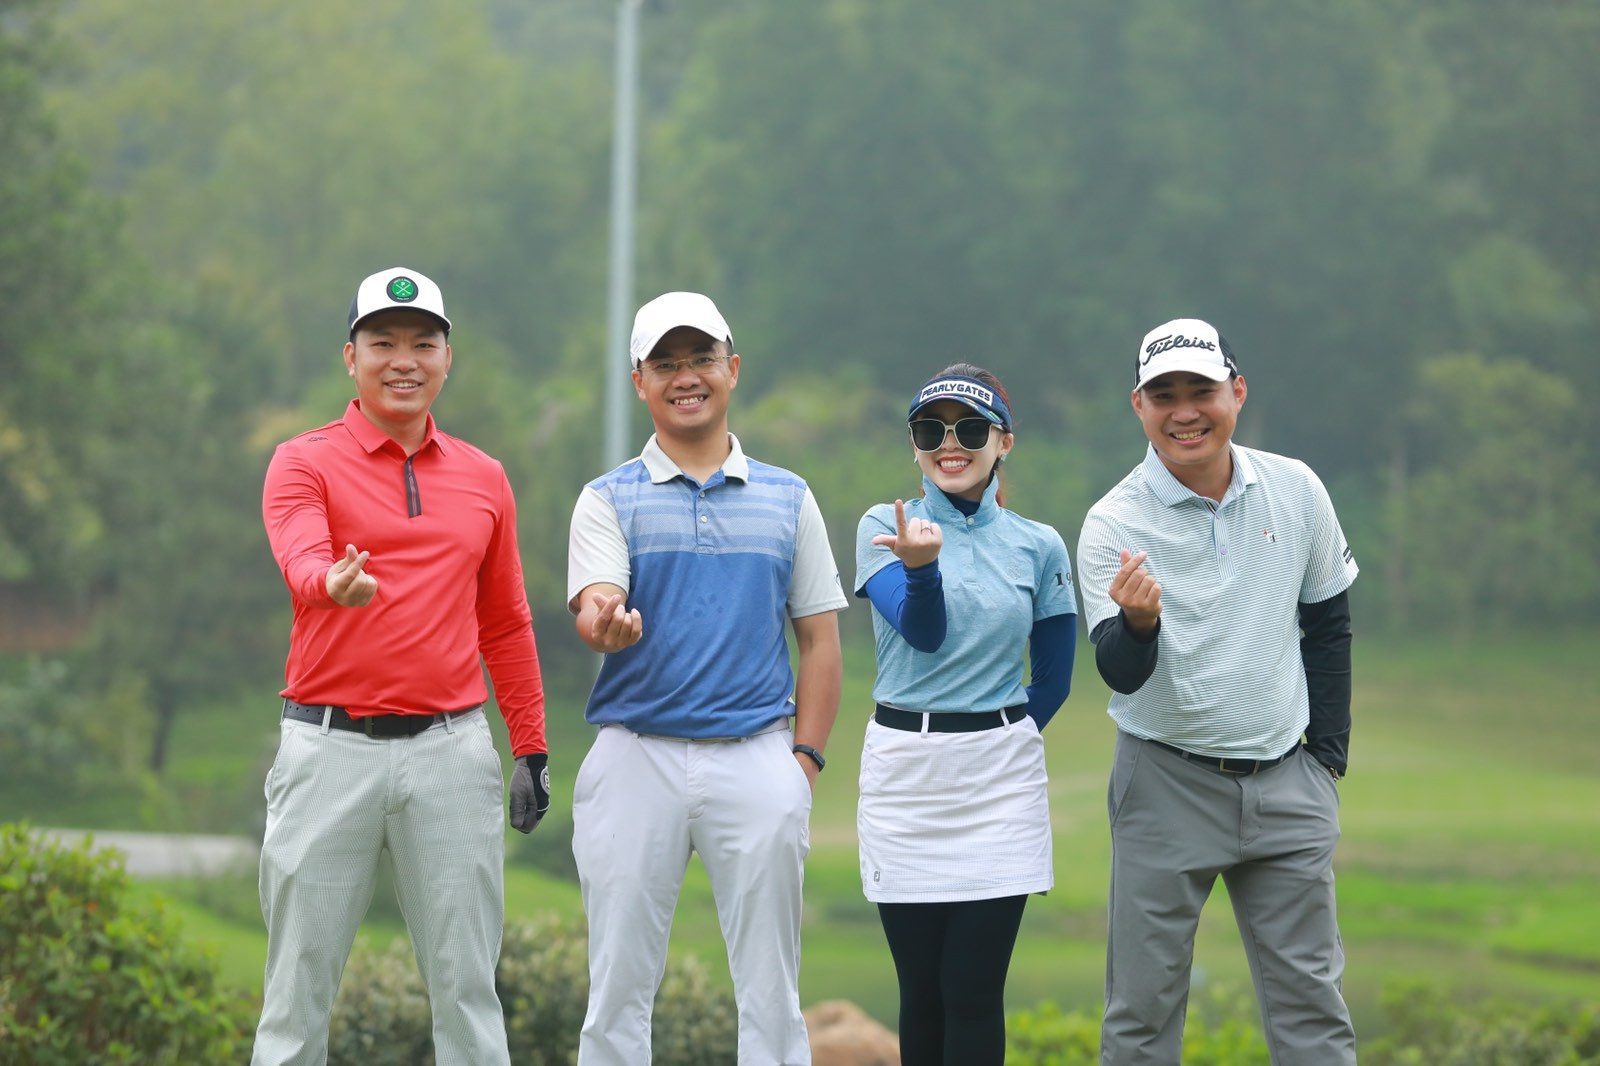 CLB Golf Đinh Mão tổ chức Outing tháng 3 ra mắt các thành viên mới - Ảnh 4.